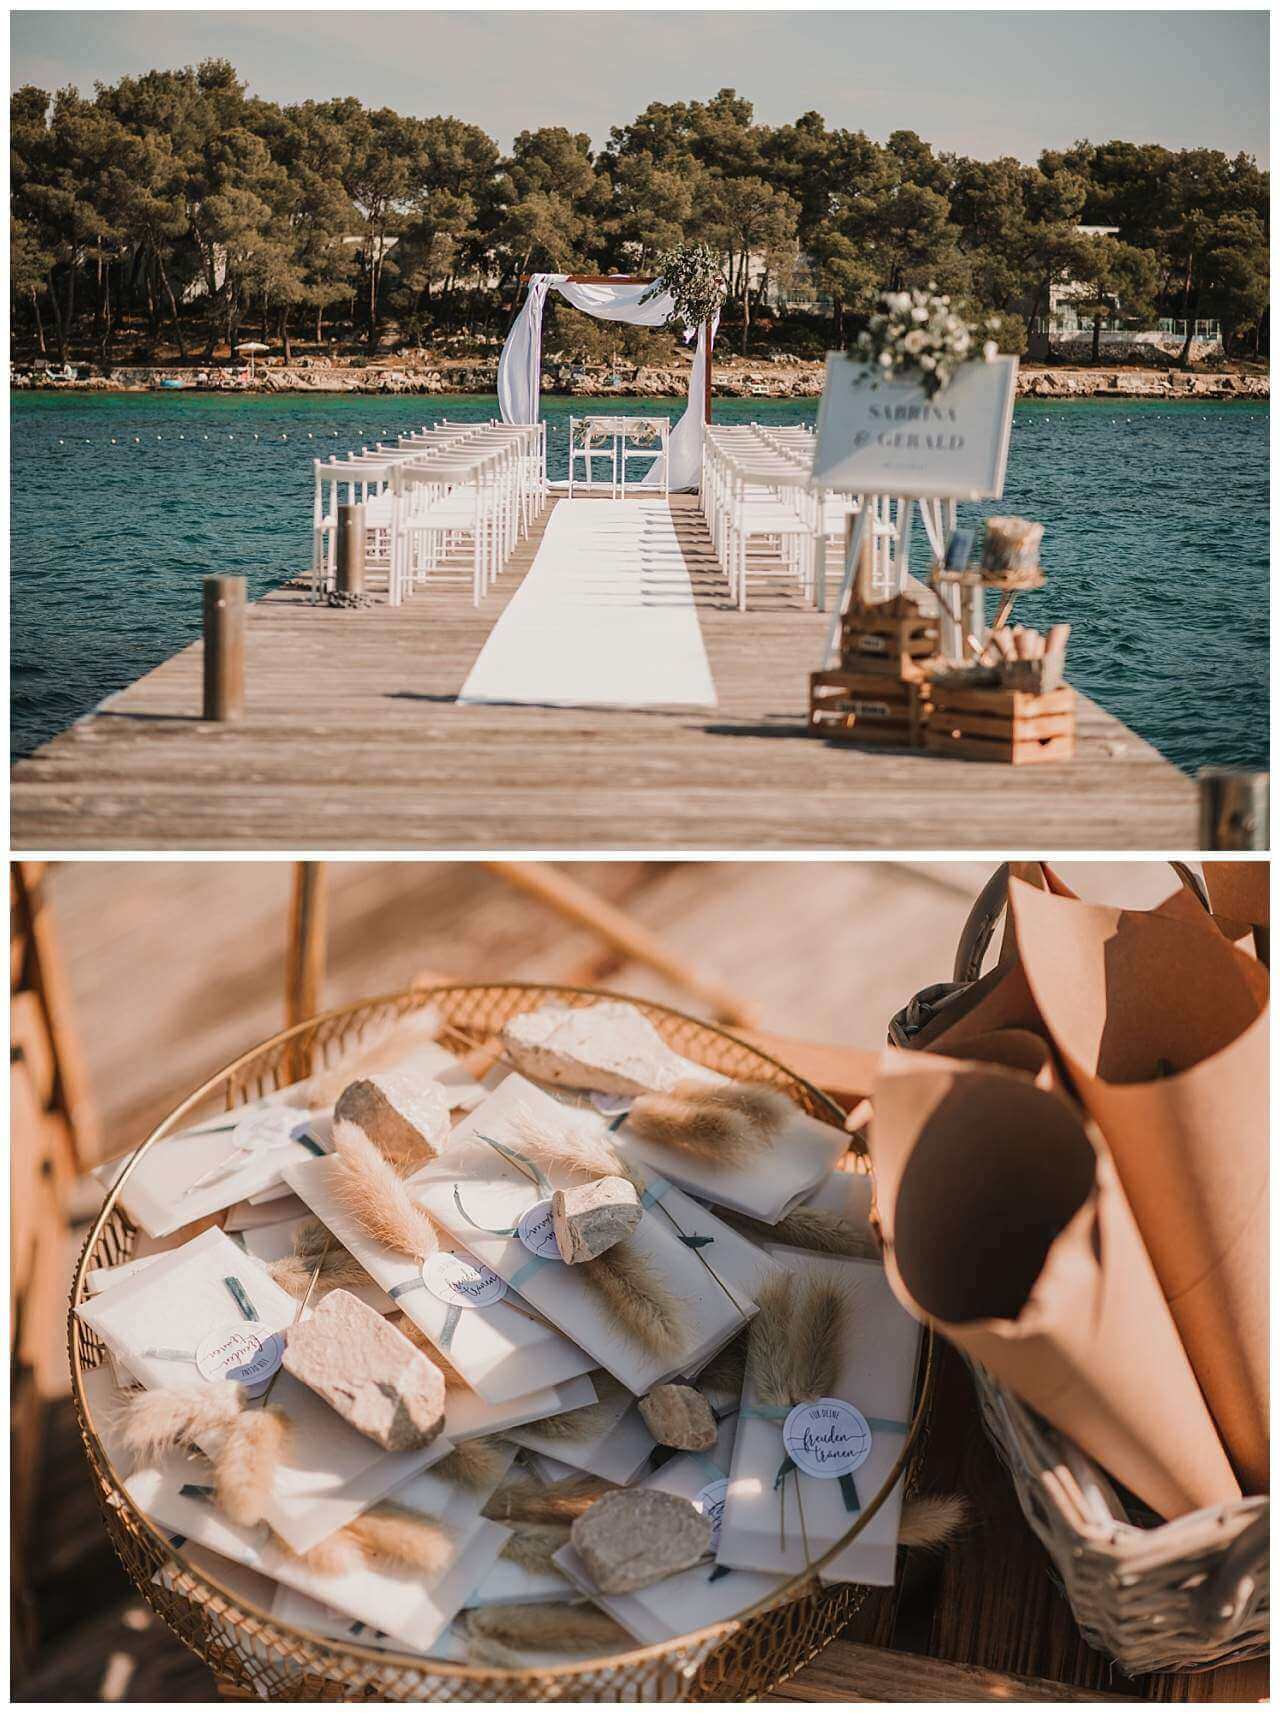 Hochzeitsplanerin zeigt Trausetting auf Steg und Taschentücher für Hochzeit am Yachthafen in Kroatien